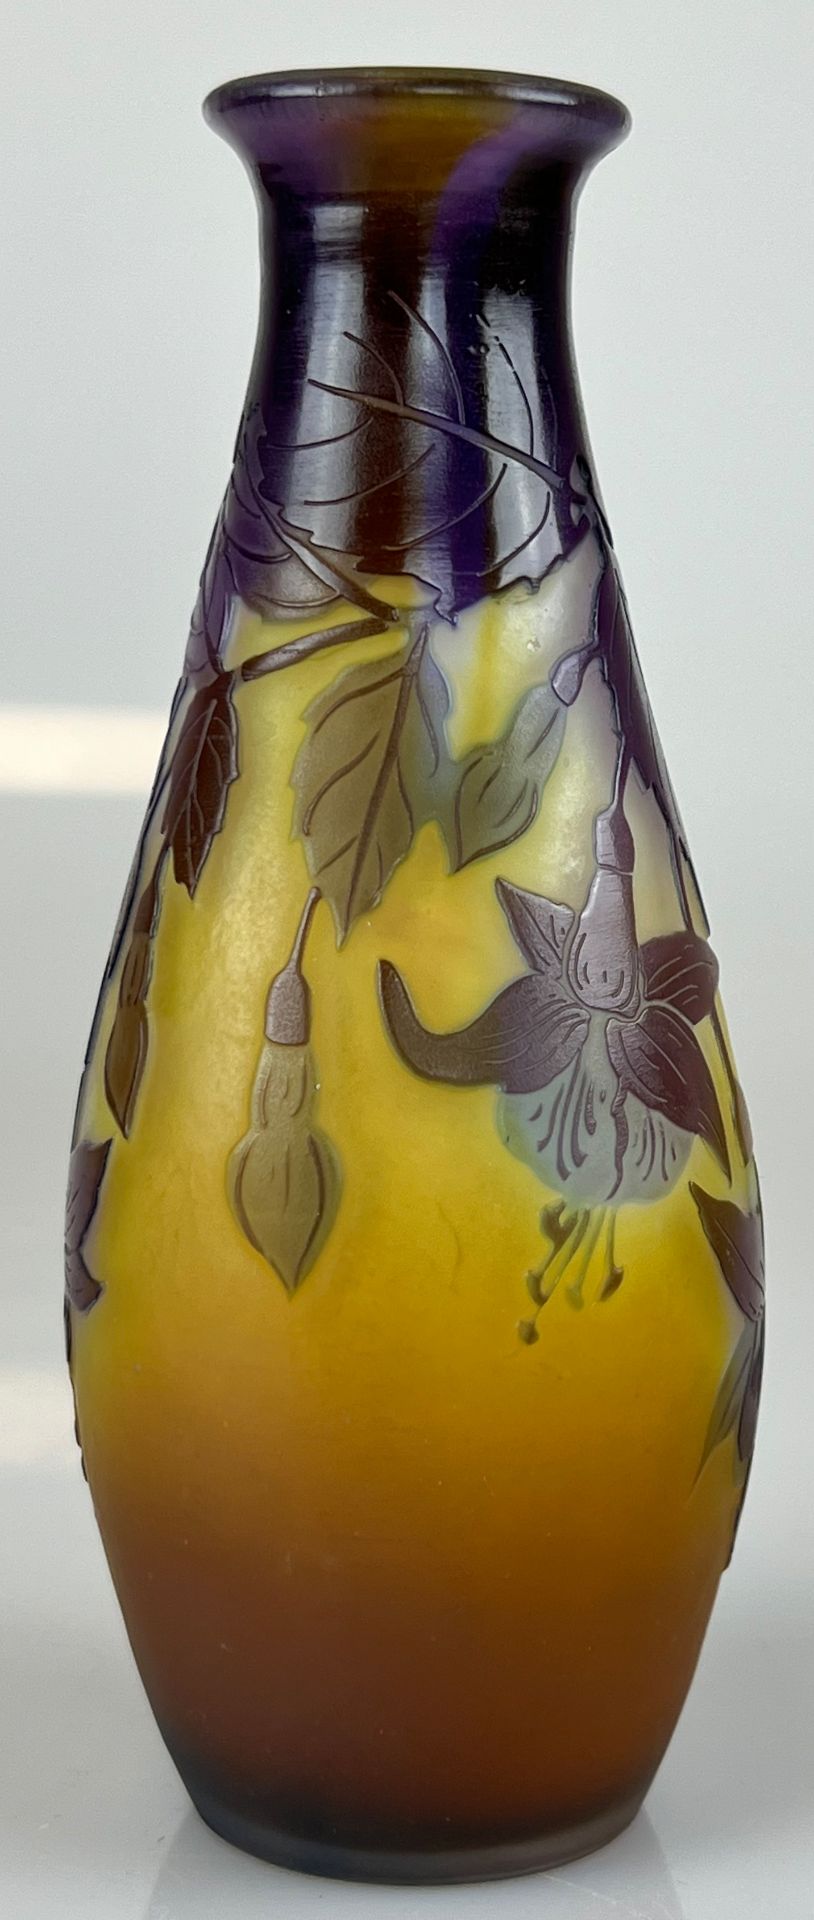 Émile GALLÉ (1846 - 1904). Vase mit Fuchsien. Um 1900. - Image 2 of 11